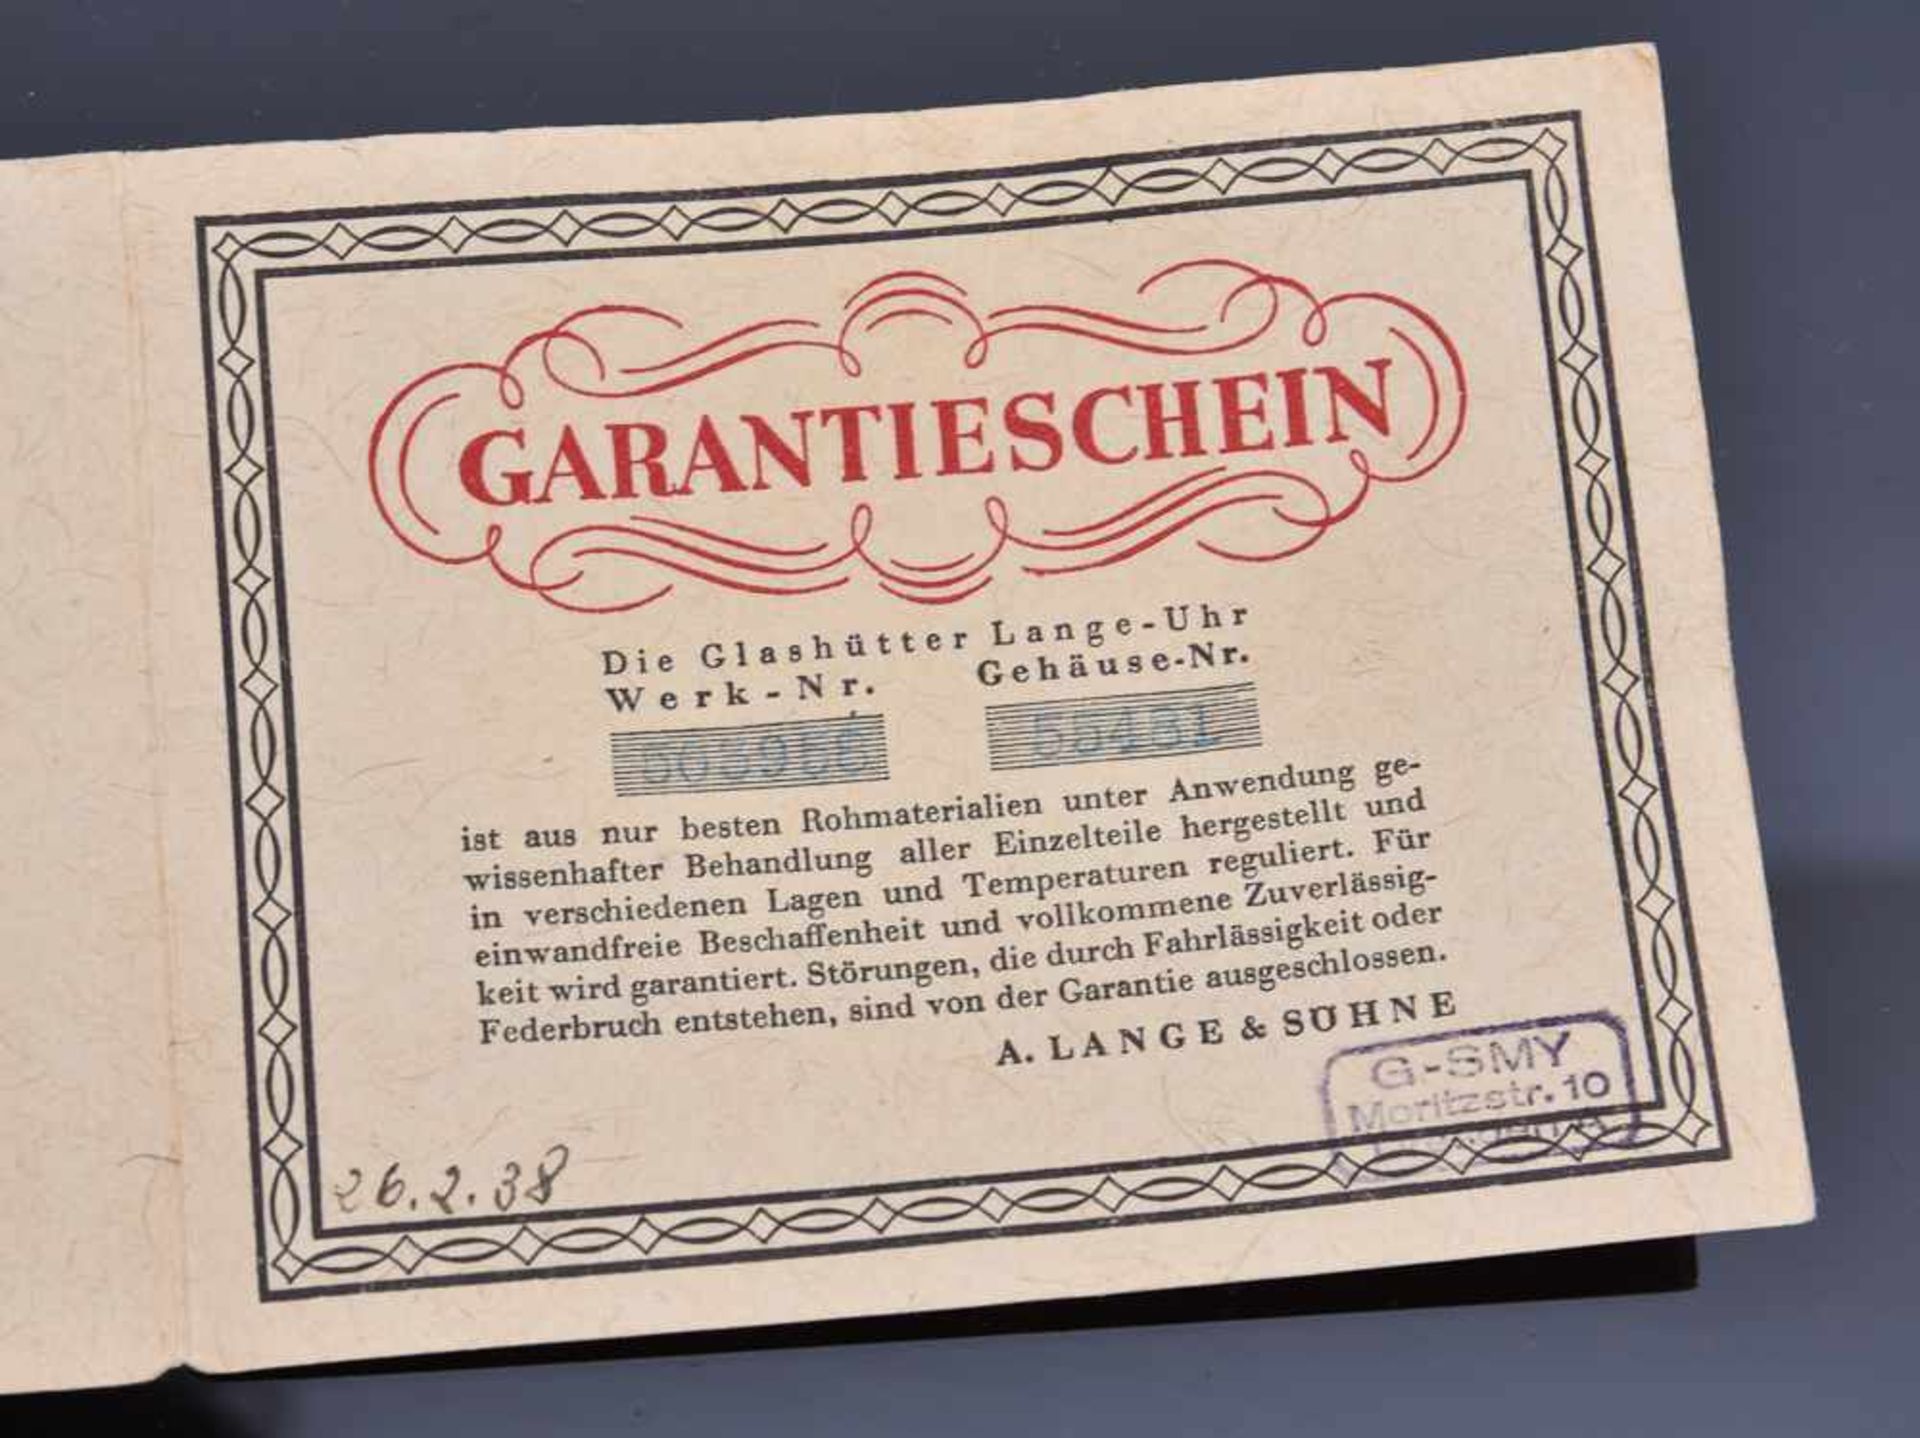 LANGE & SÖHNE: TASCHENUHR "OLIW", 585er GG, gestempelt, in Originalbox, 1938 Handaufzug (15 Steine), - Image 3 of 15